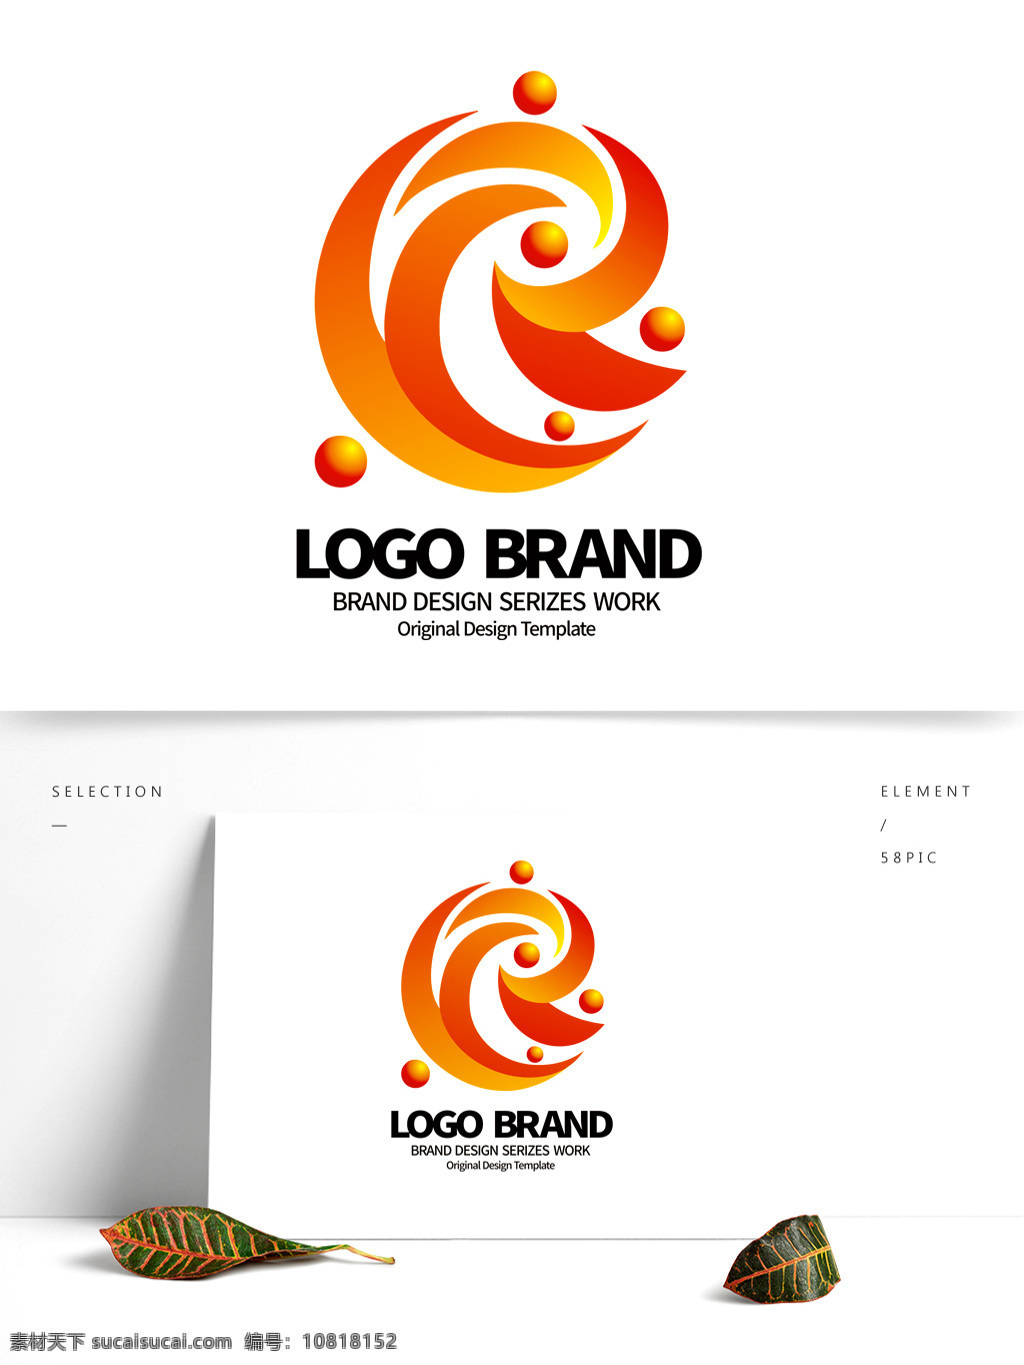 矢量 红 黄 飘带 c 字母 公司 logo 标志设计 ce图标 j 飞鸟 标志 公司标志设计 企业 会徽标志设计 企业标志设计